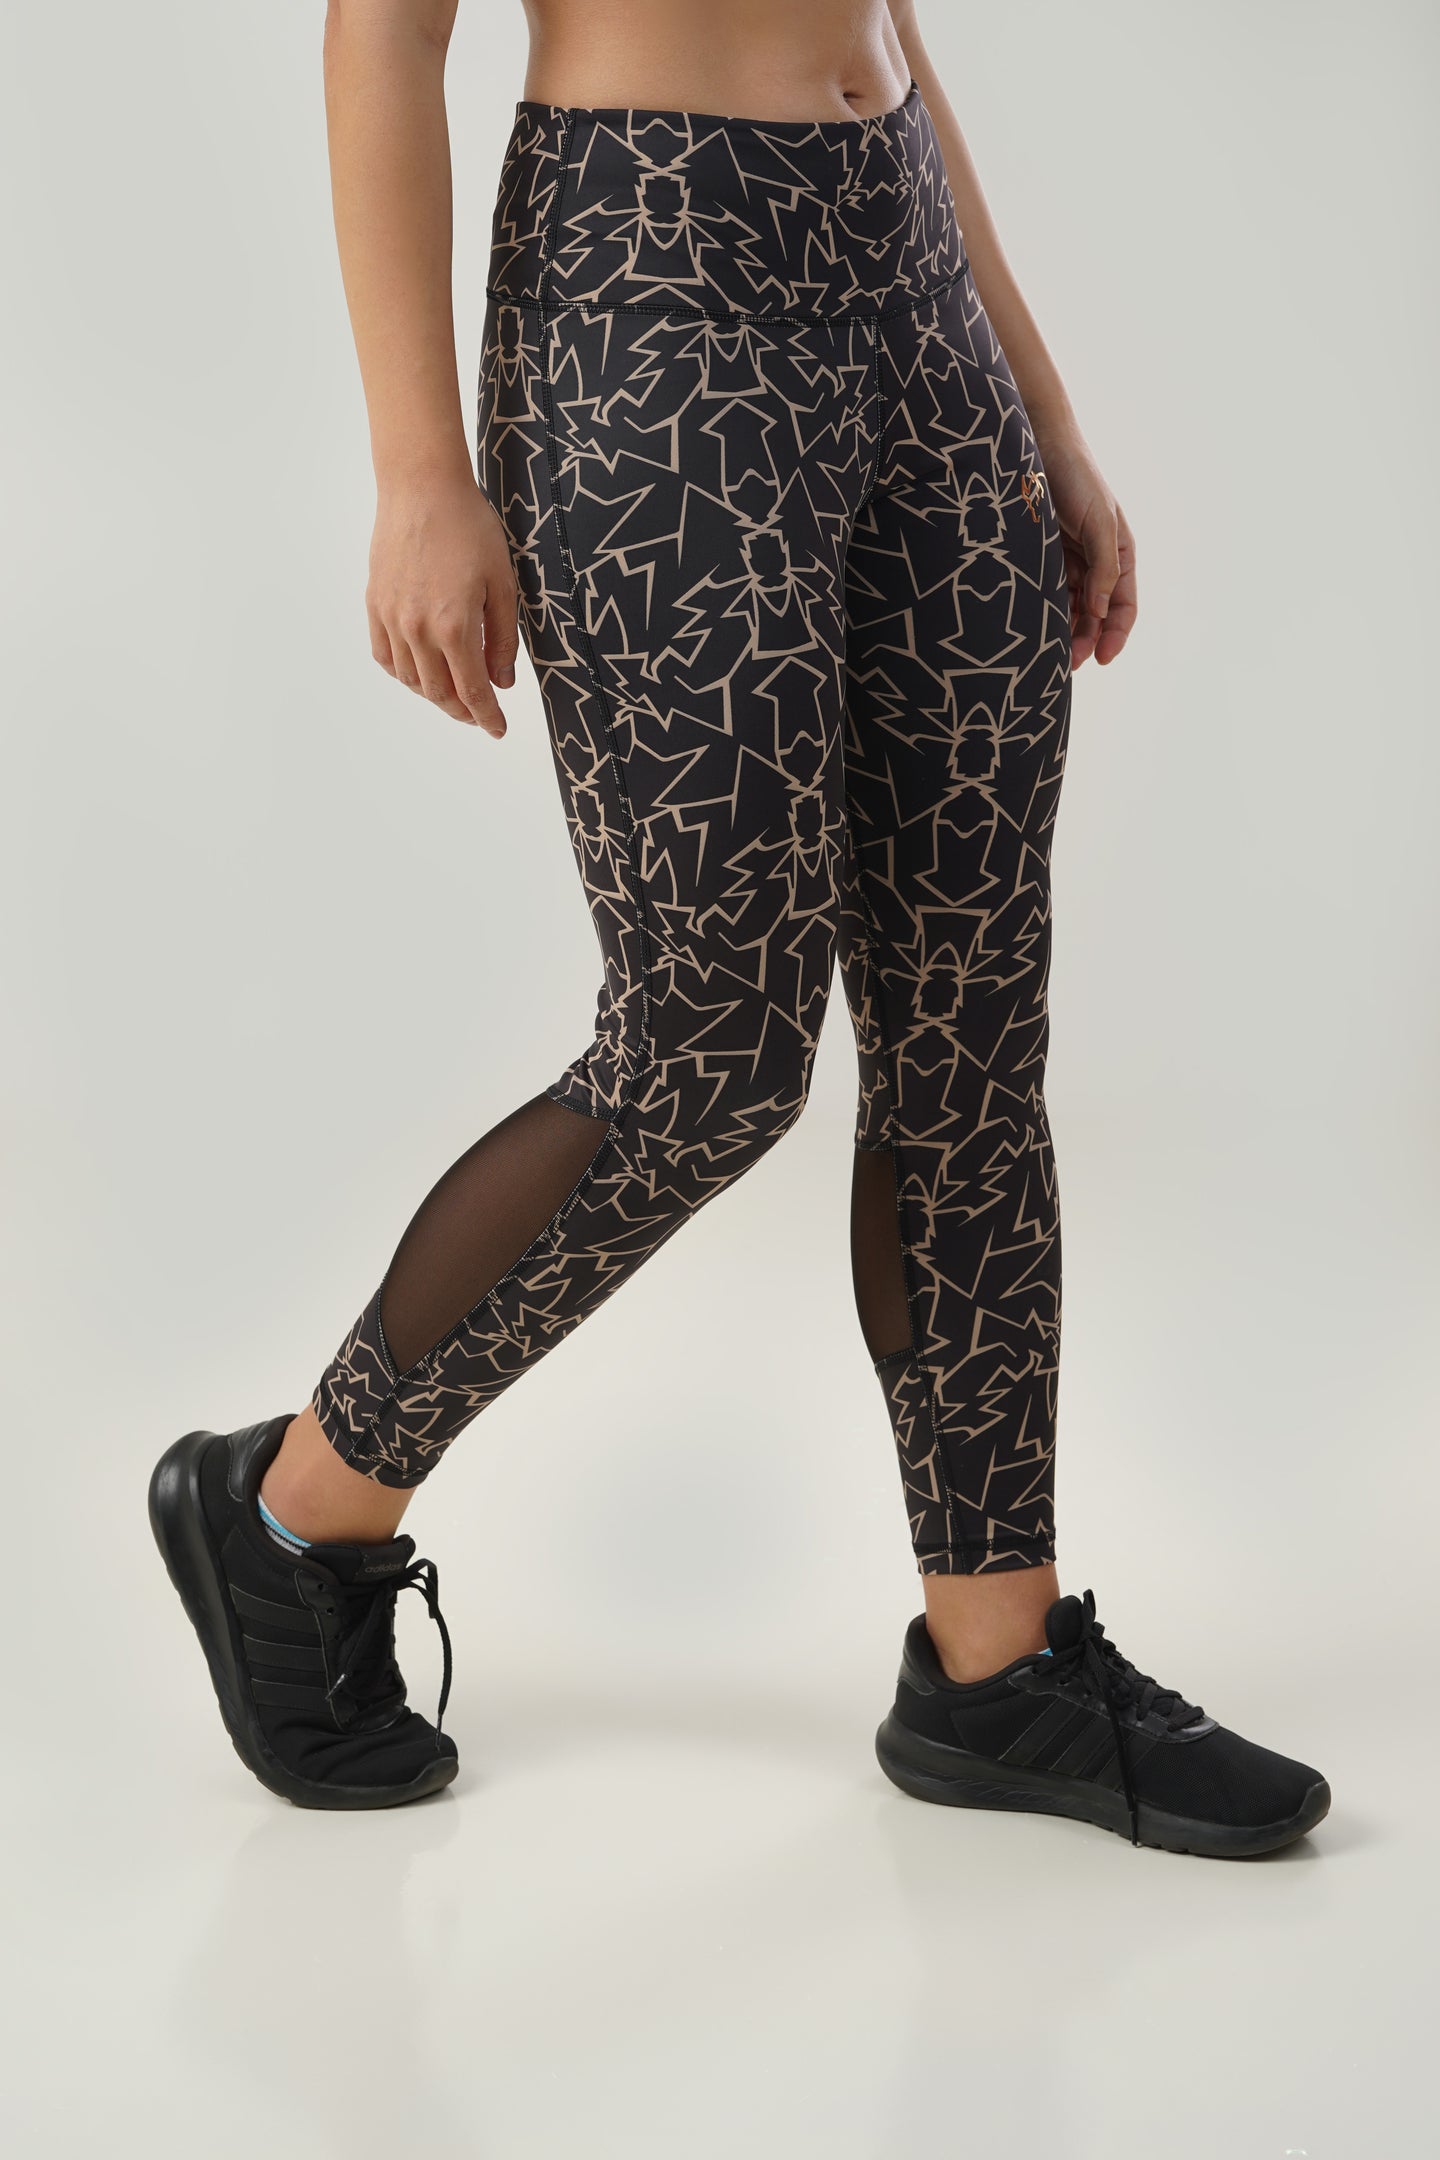 Cheetah Print Leggings – 1440 Togs